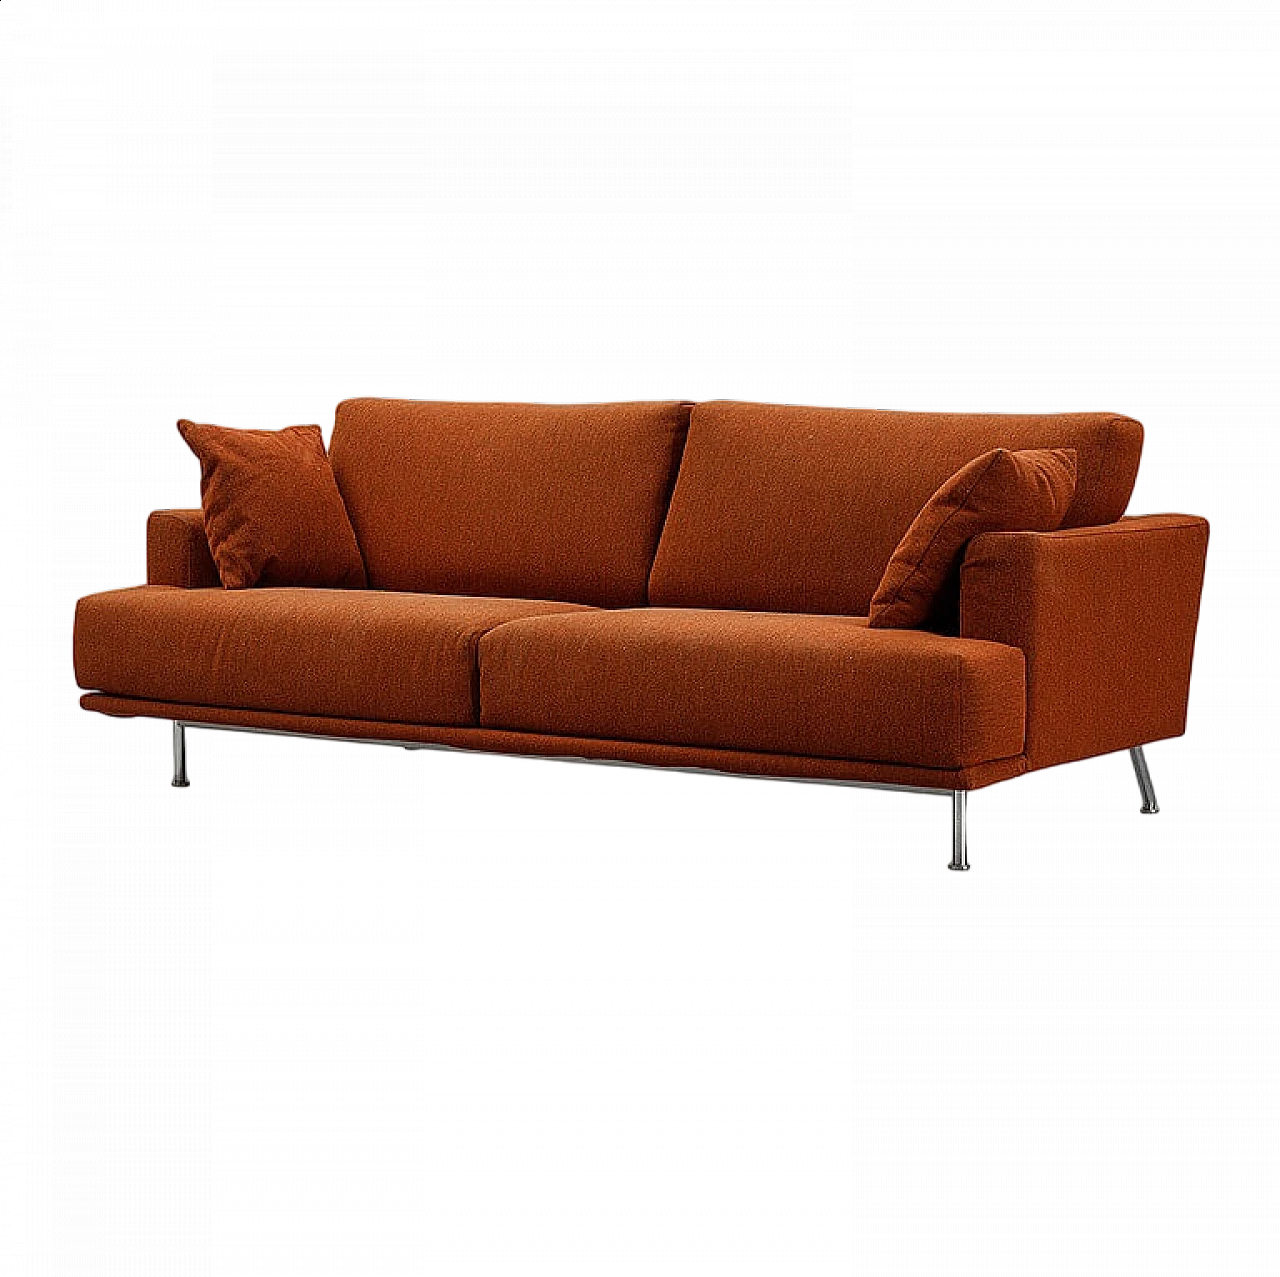 NEST 253 sofa in brick orange by Piero Lissoni for Cassina, 1999 11